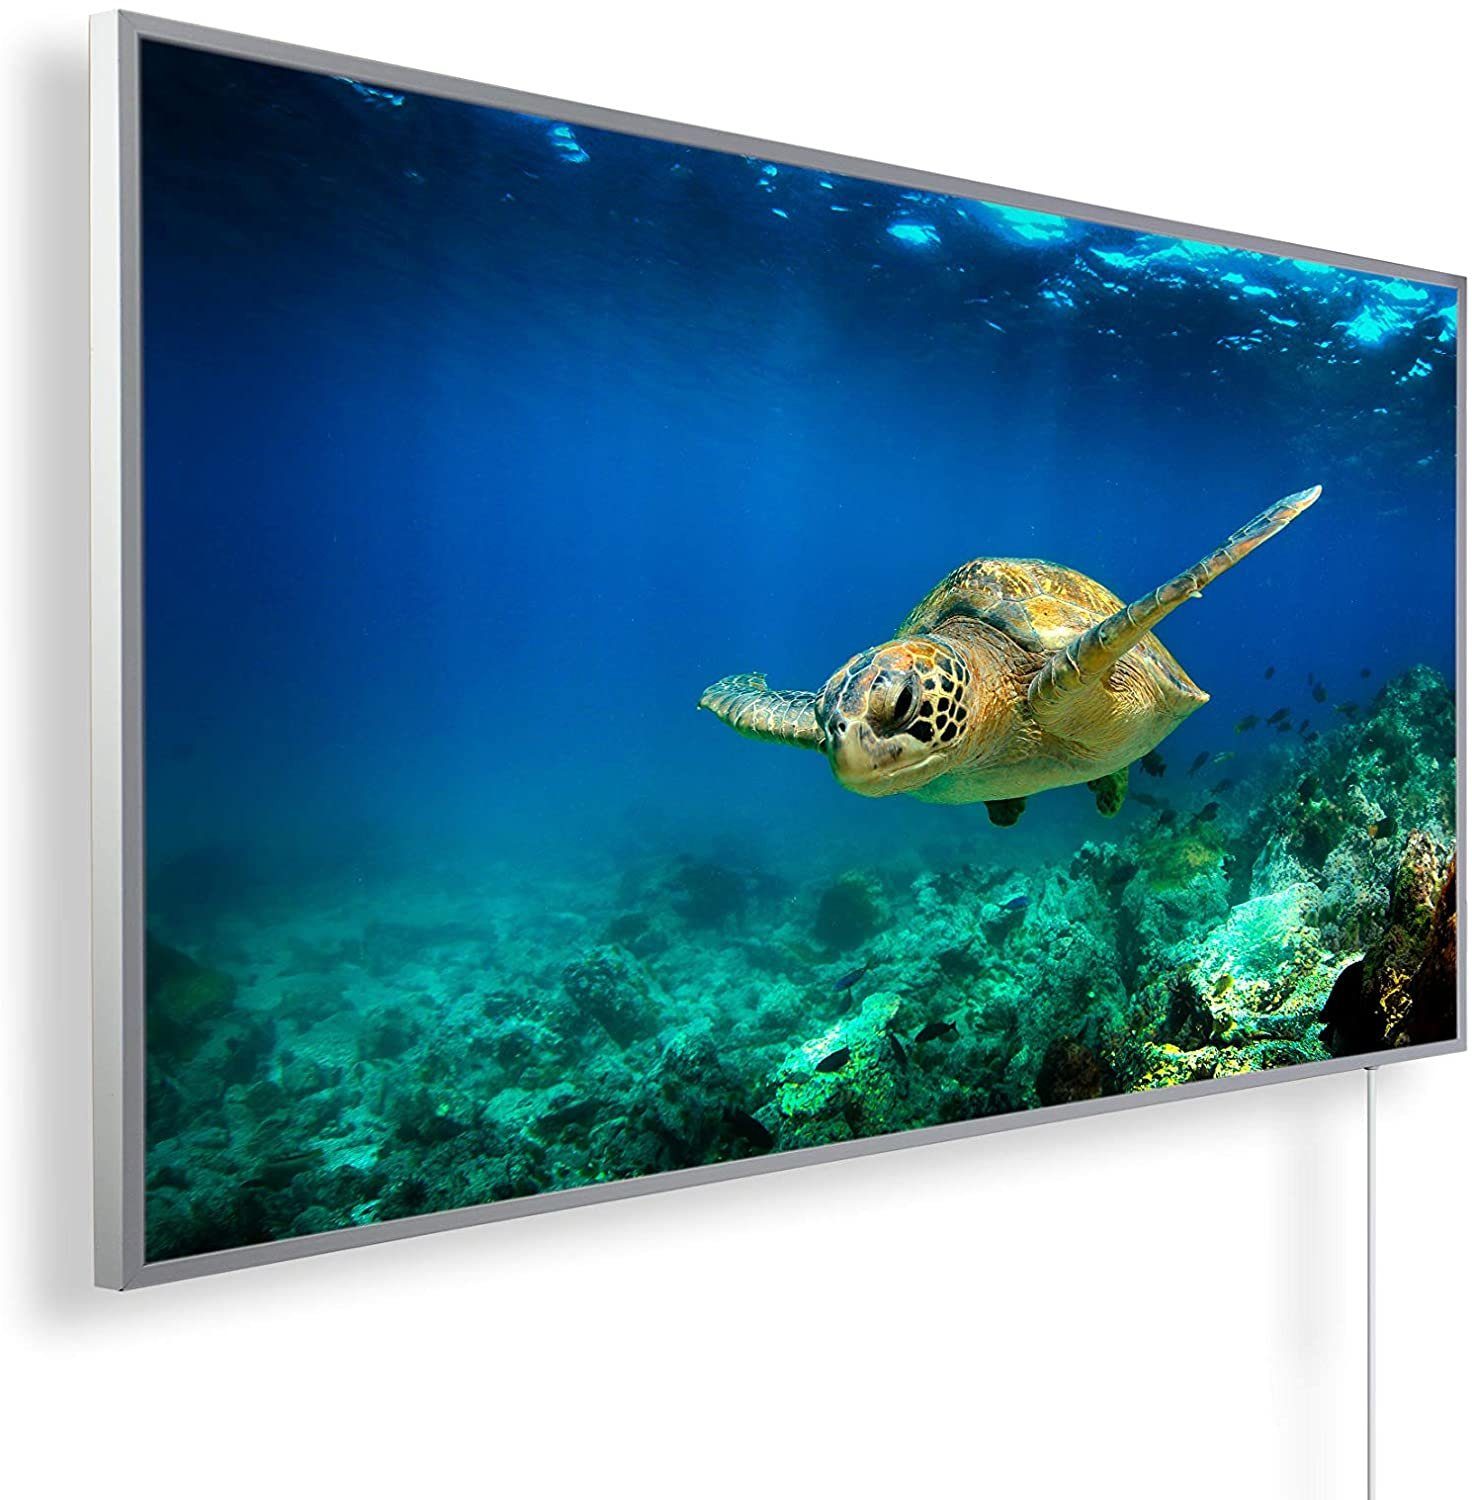 Könighaus Infrarotheizung Smart Schildkröte Unterwasser Home 600W angenehme Made in Strahlungswärme, Smart, Germany, Bild-Serie